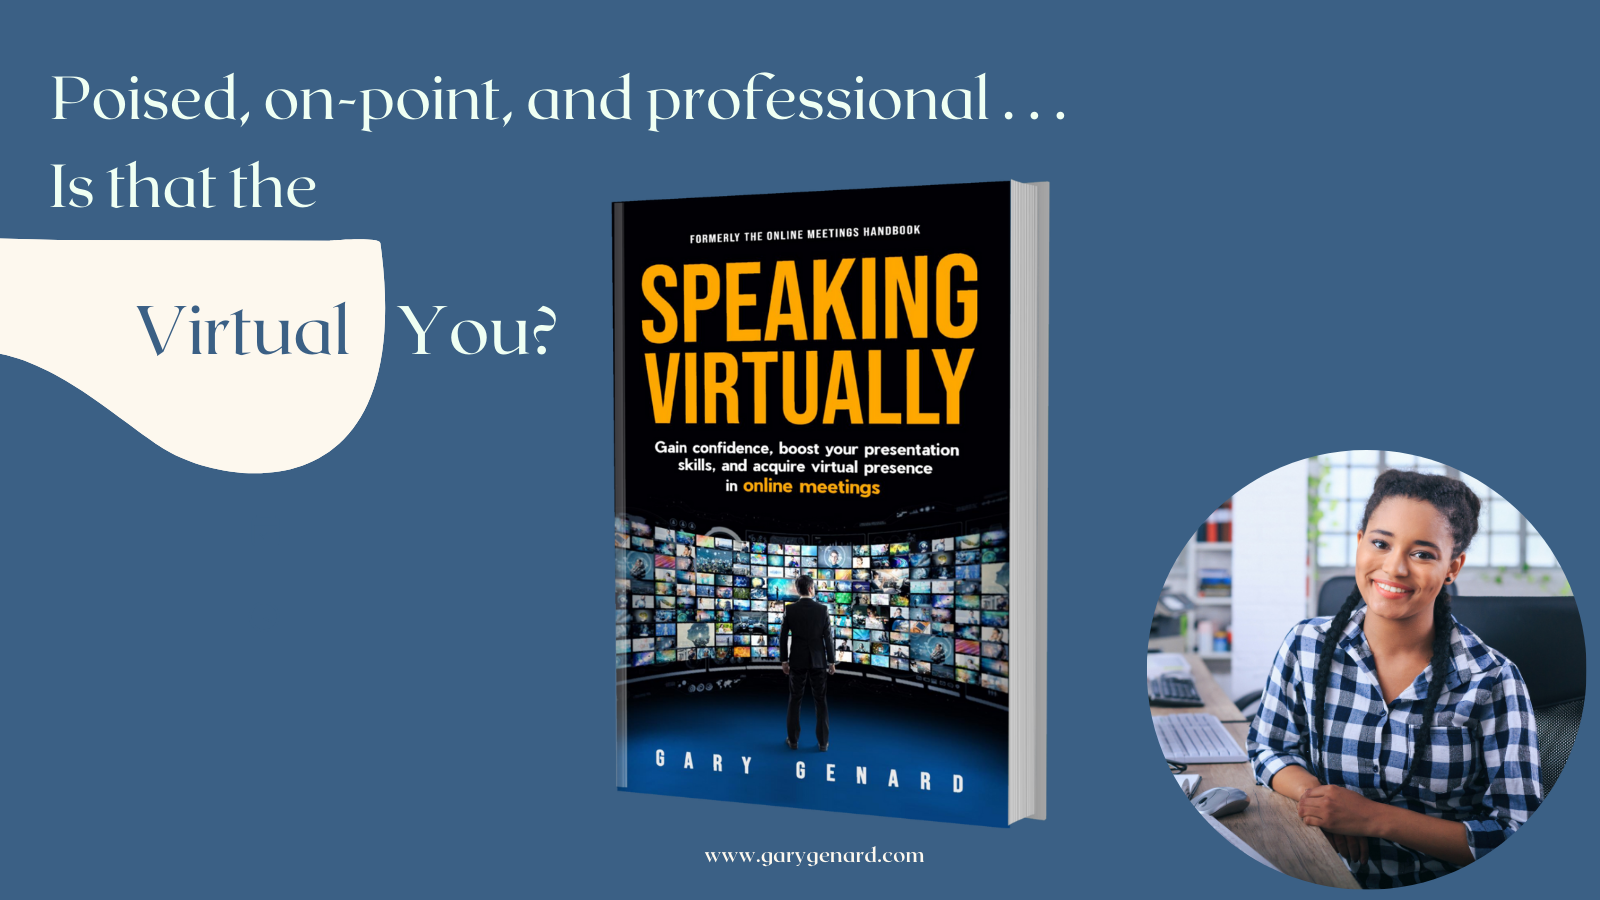 Dr. Gary Genard's Online Meetings Handbook, Speaking Virtually.